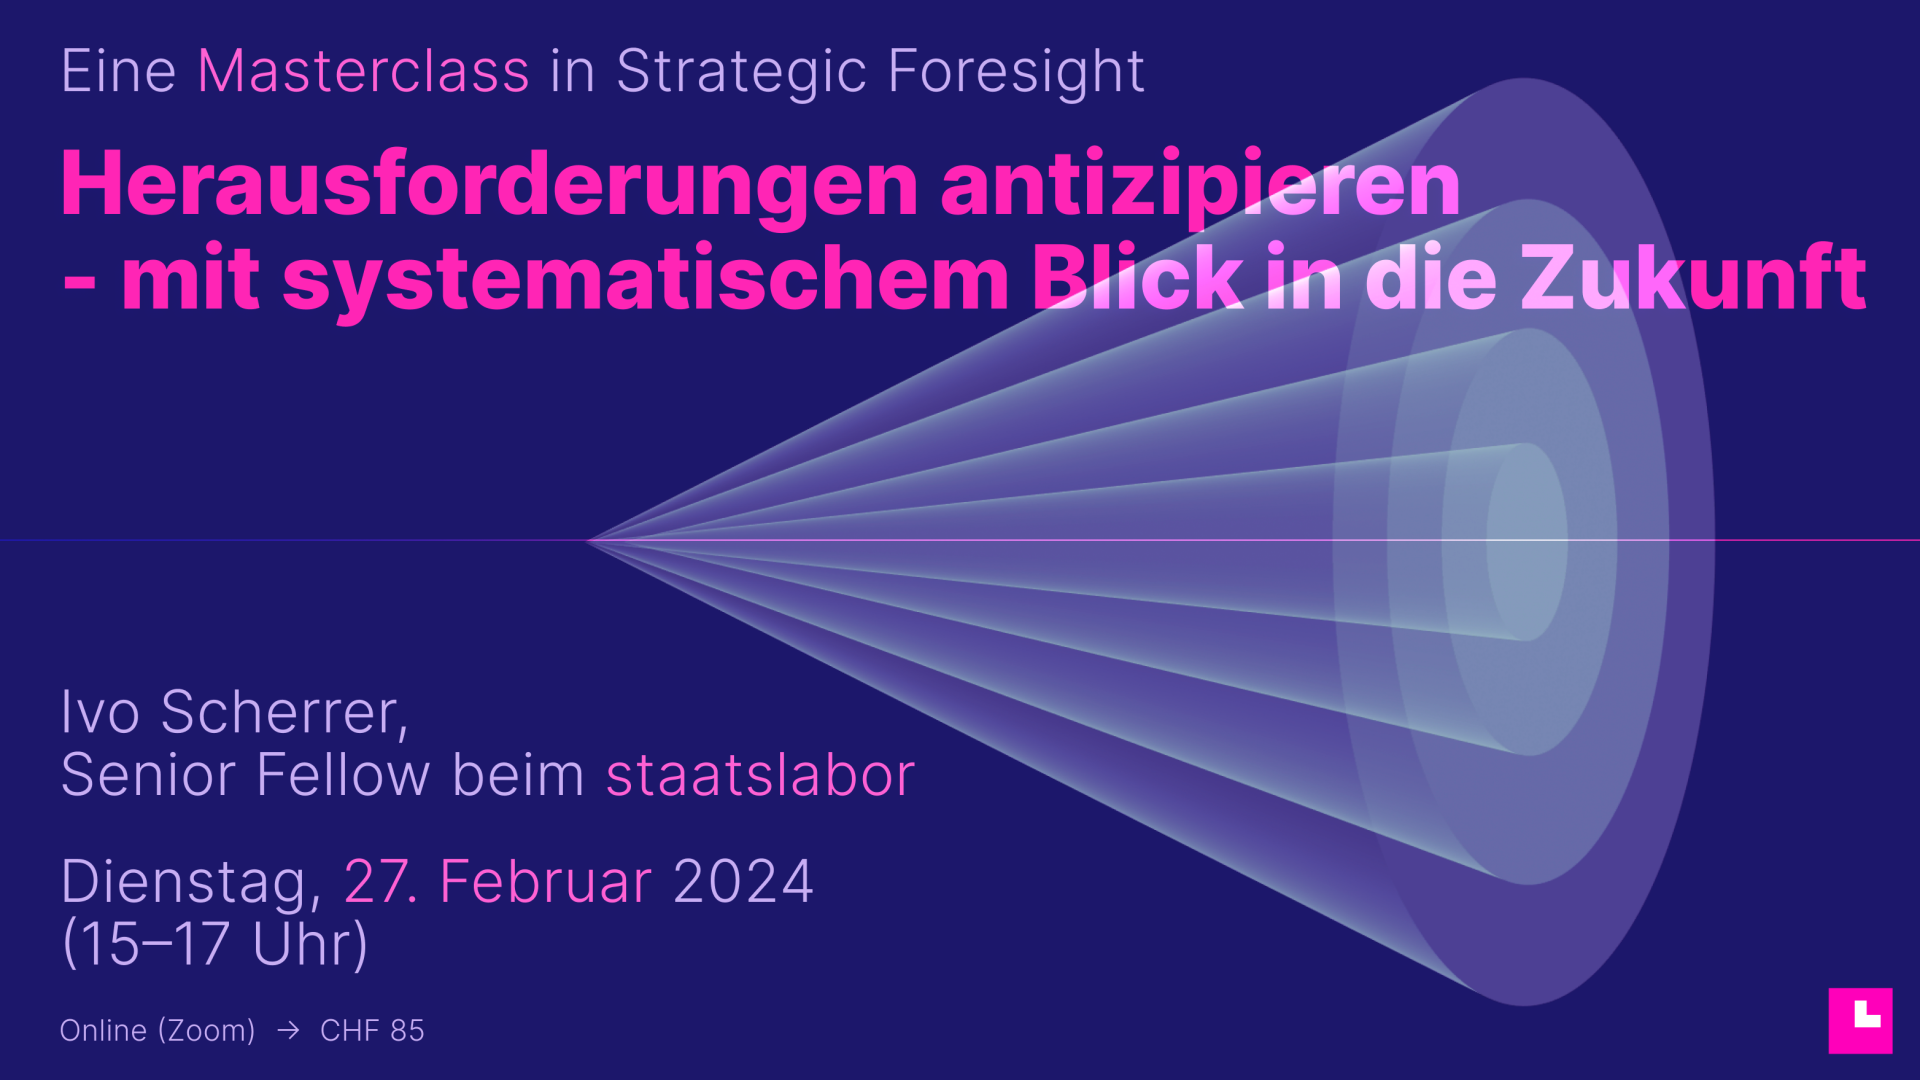 Masterclass in strategic foresight mit Ivo Scherrer